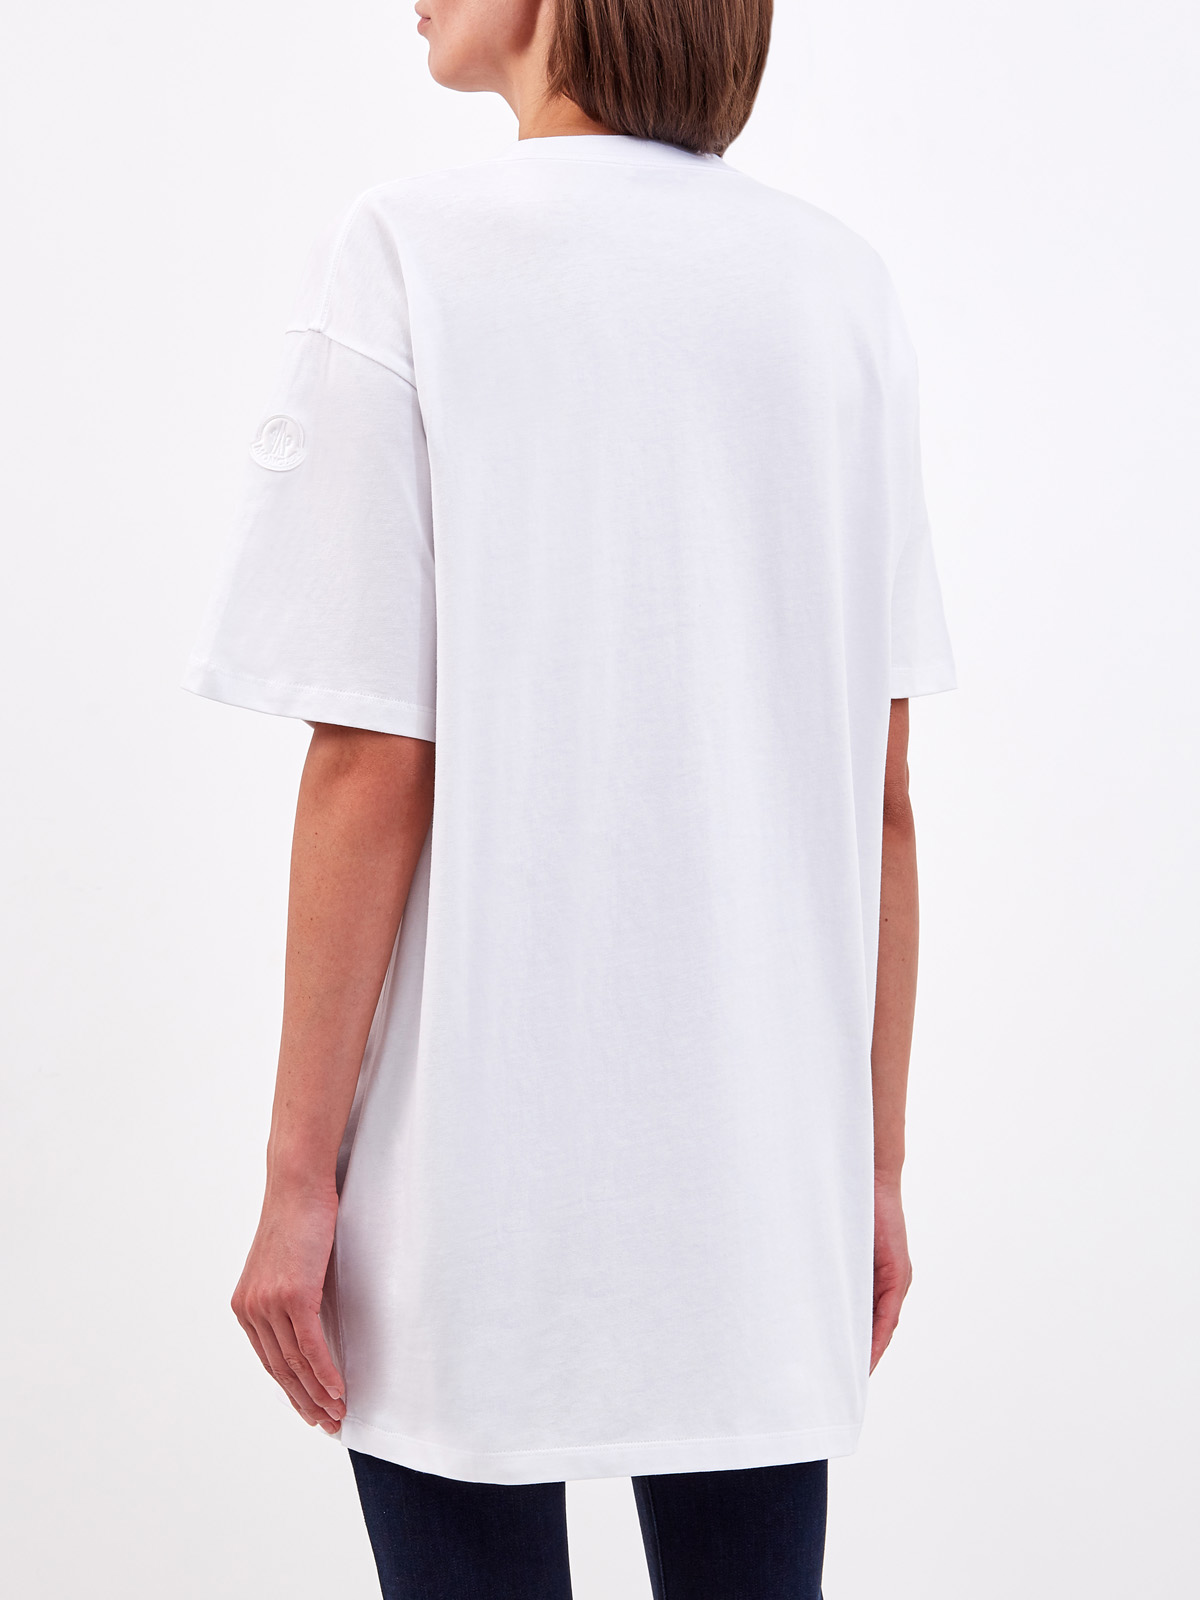 Удлиненная футболка с макро-принтом в технике аппликации MONCLER, цвет белый, размер L;XS - фото 4